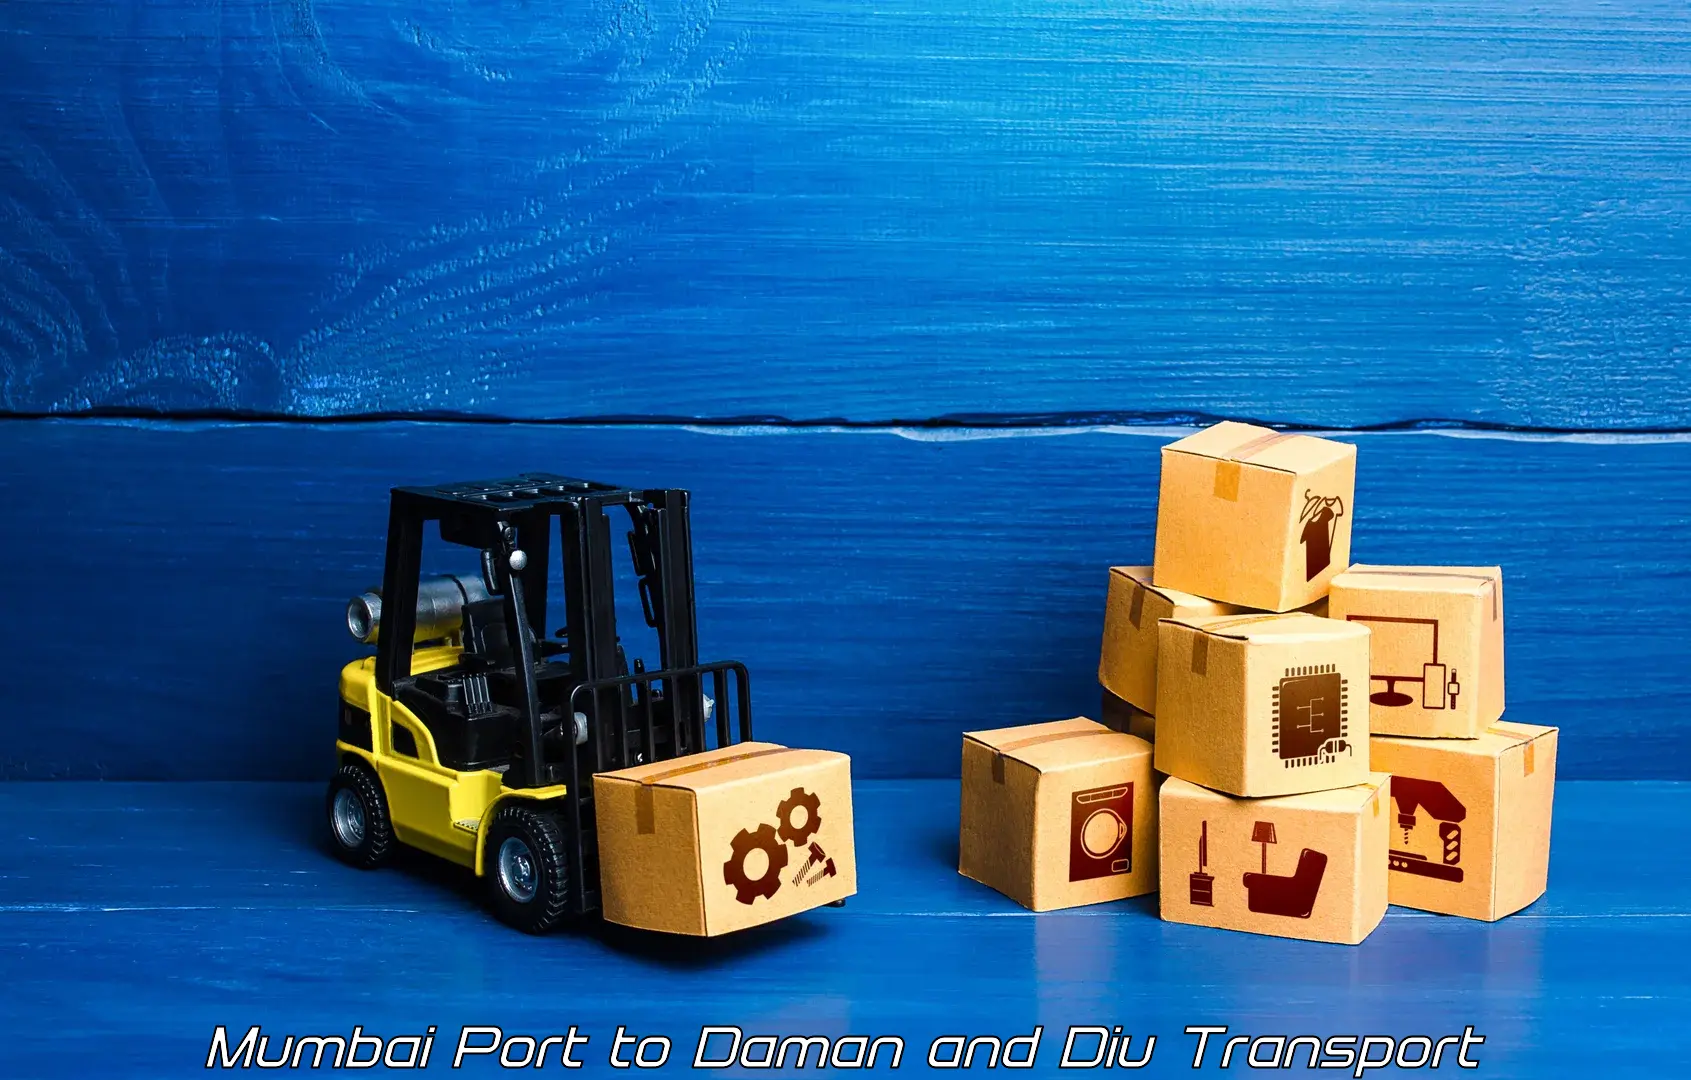 Cargo transportation services Mumbai Port to Daman